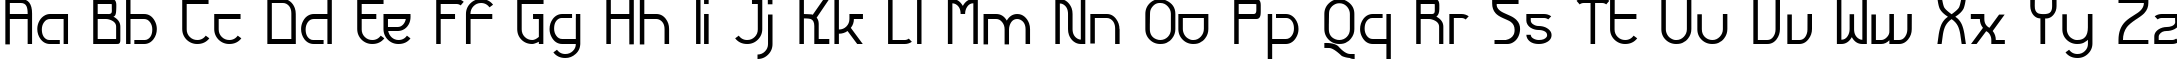 Пример написания английского алфавита шрифтом Futurex Variation Alpha